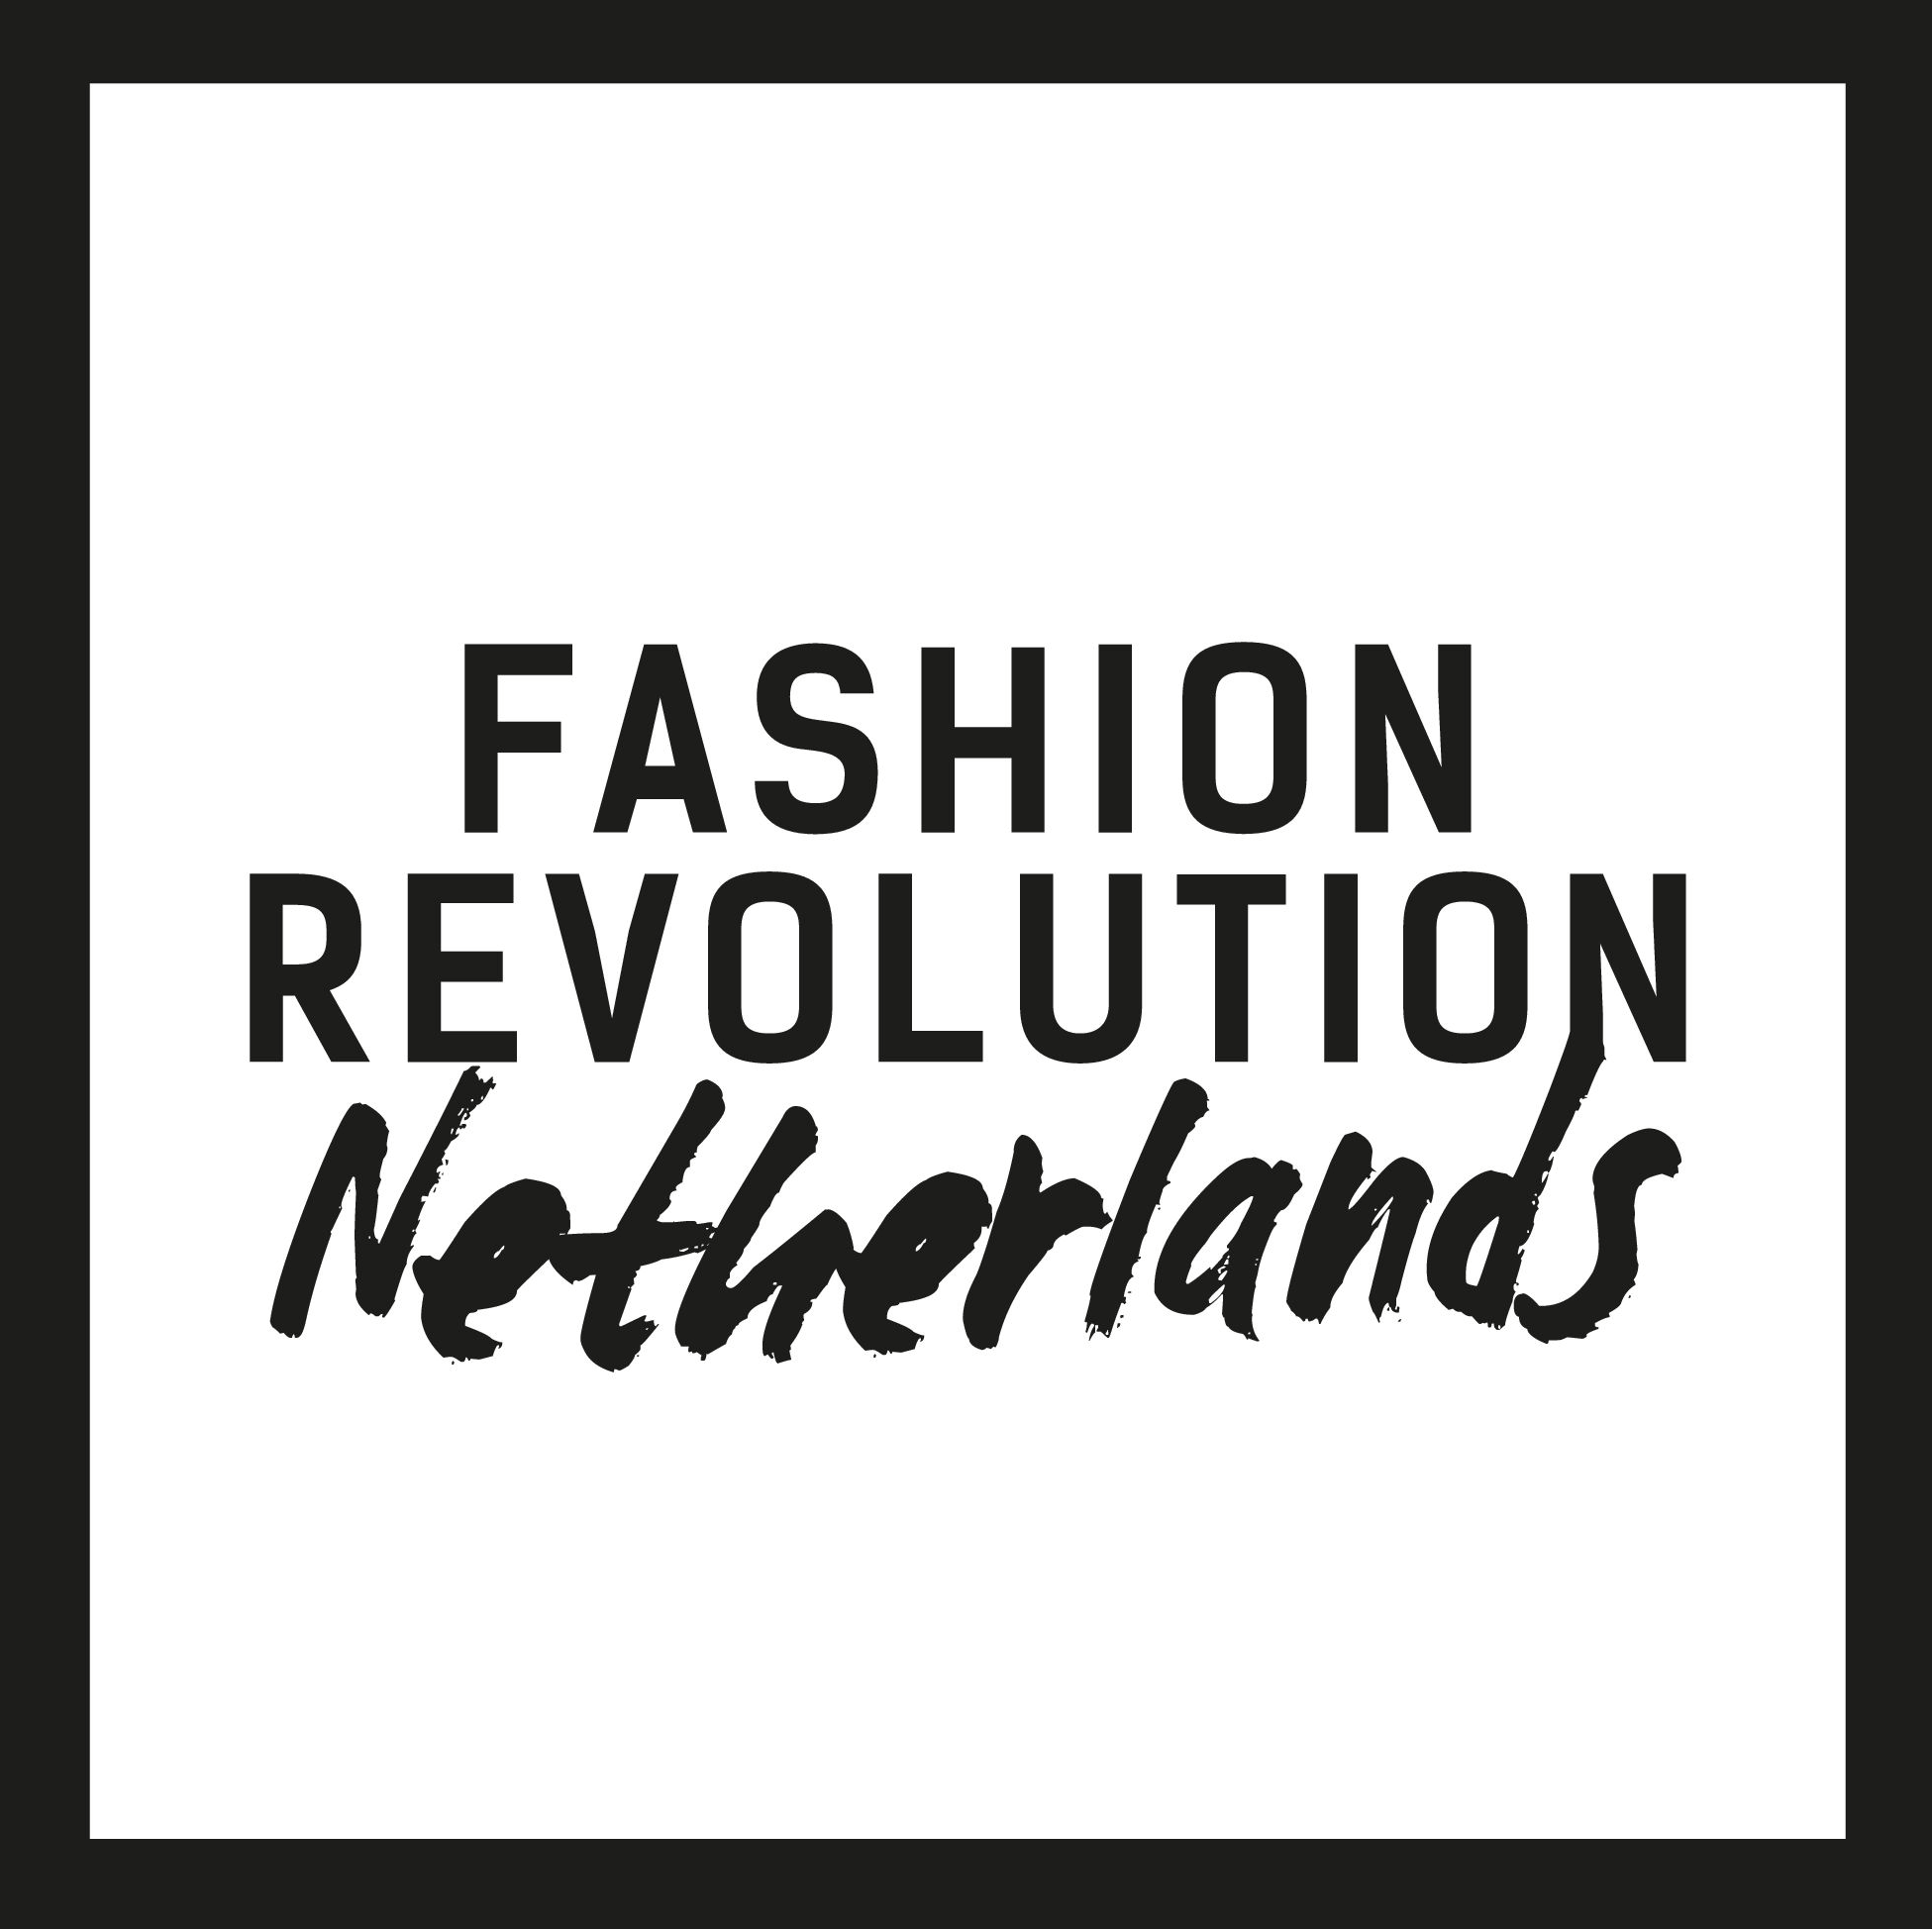 https://fashionrevolutionnetherlands.nl/wp-content/uploads/2023/01/Logo_Netherlands.png